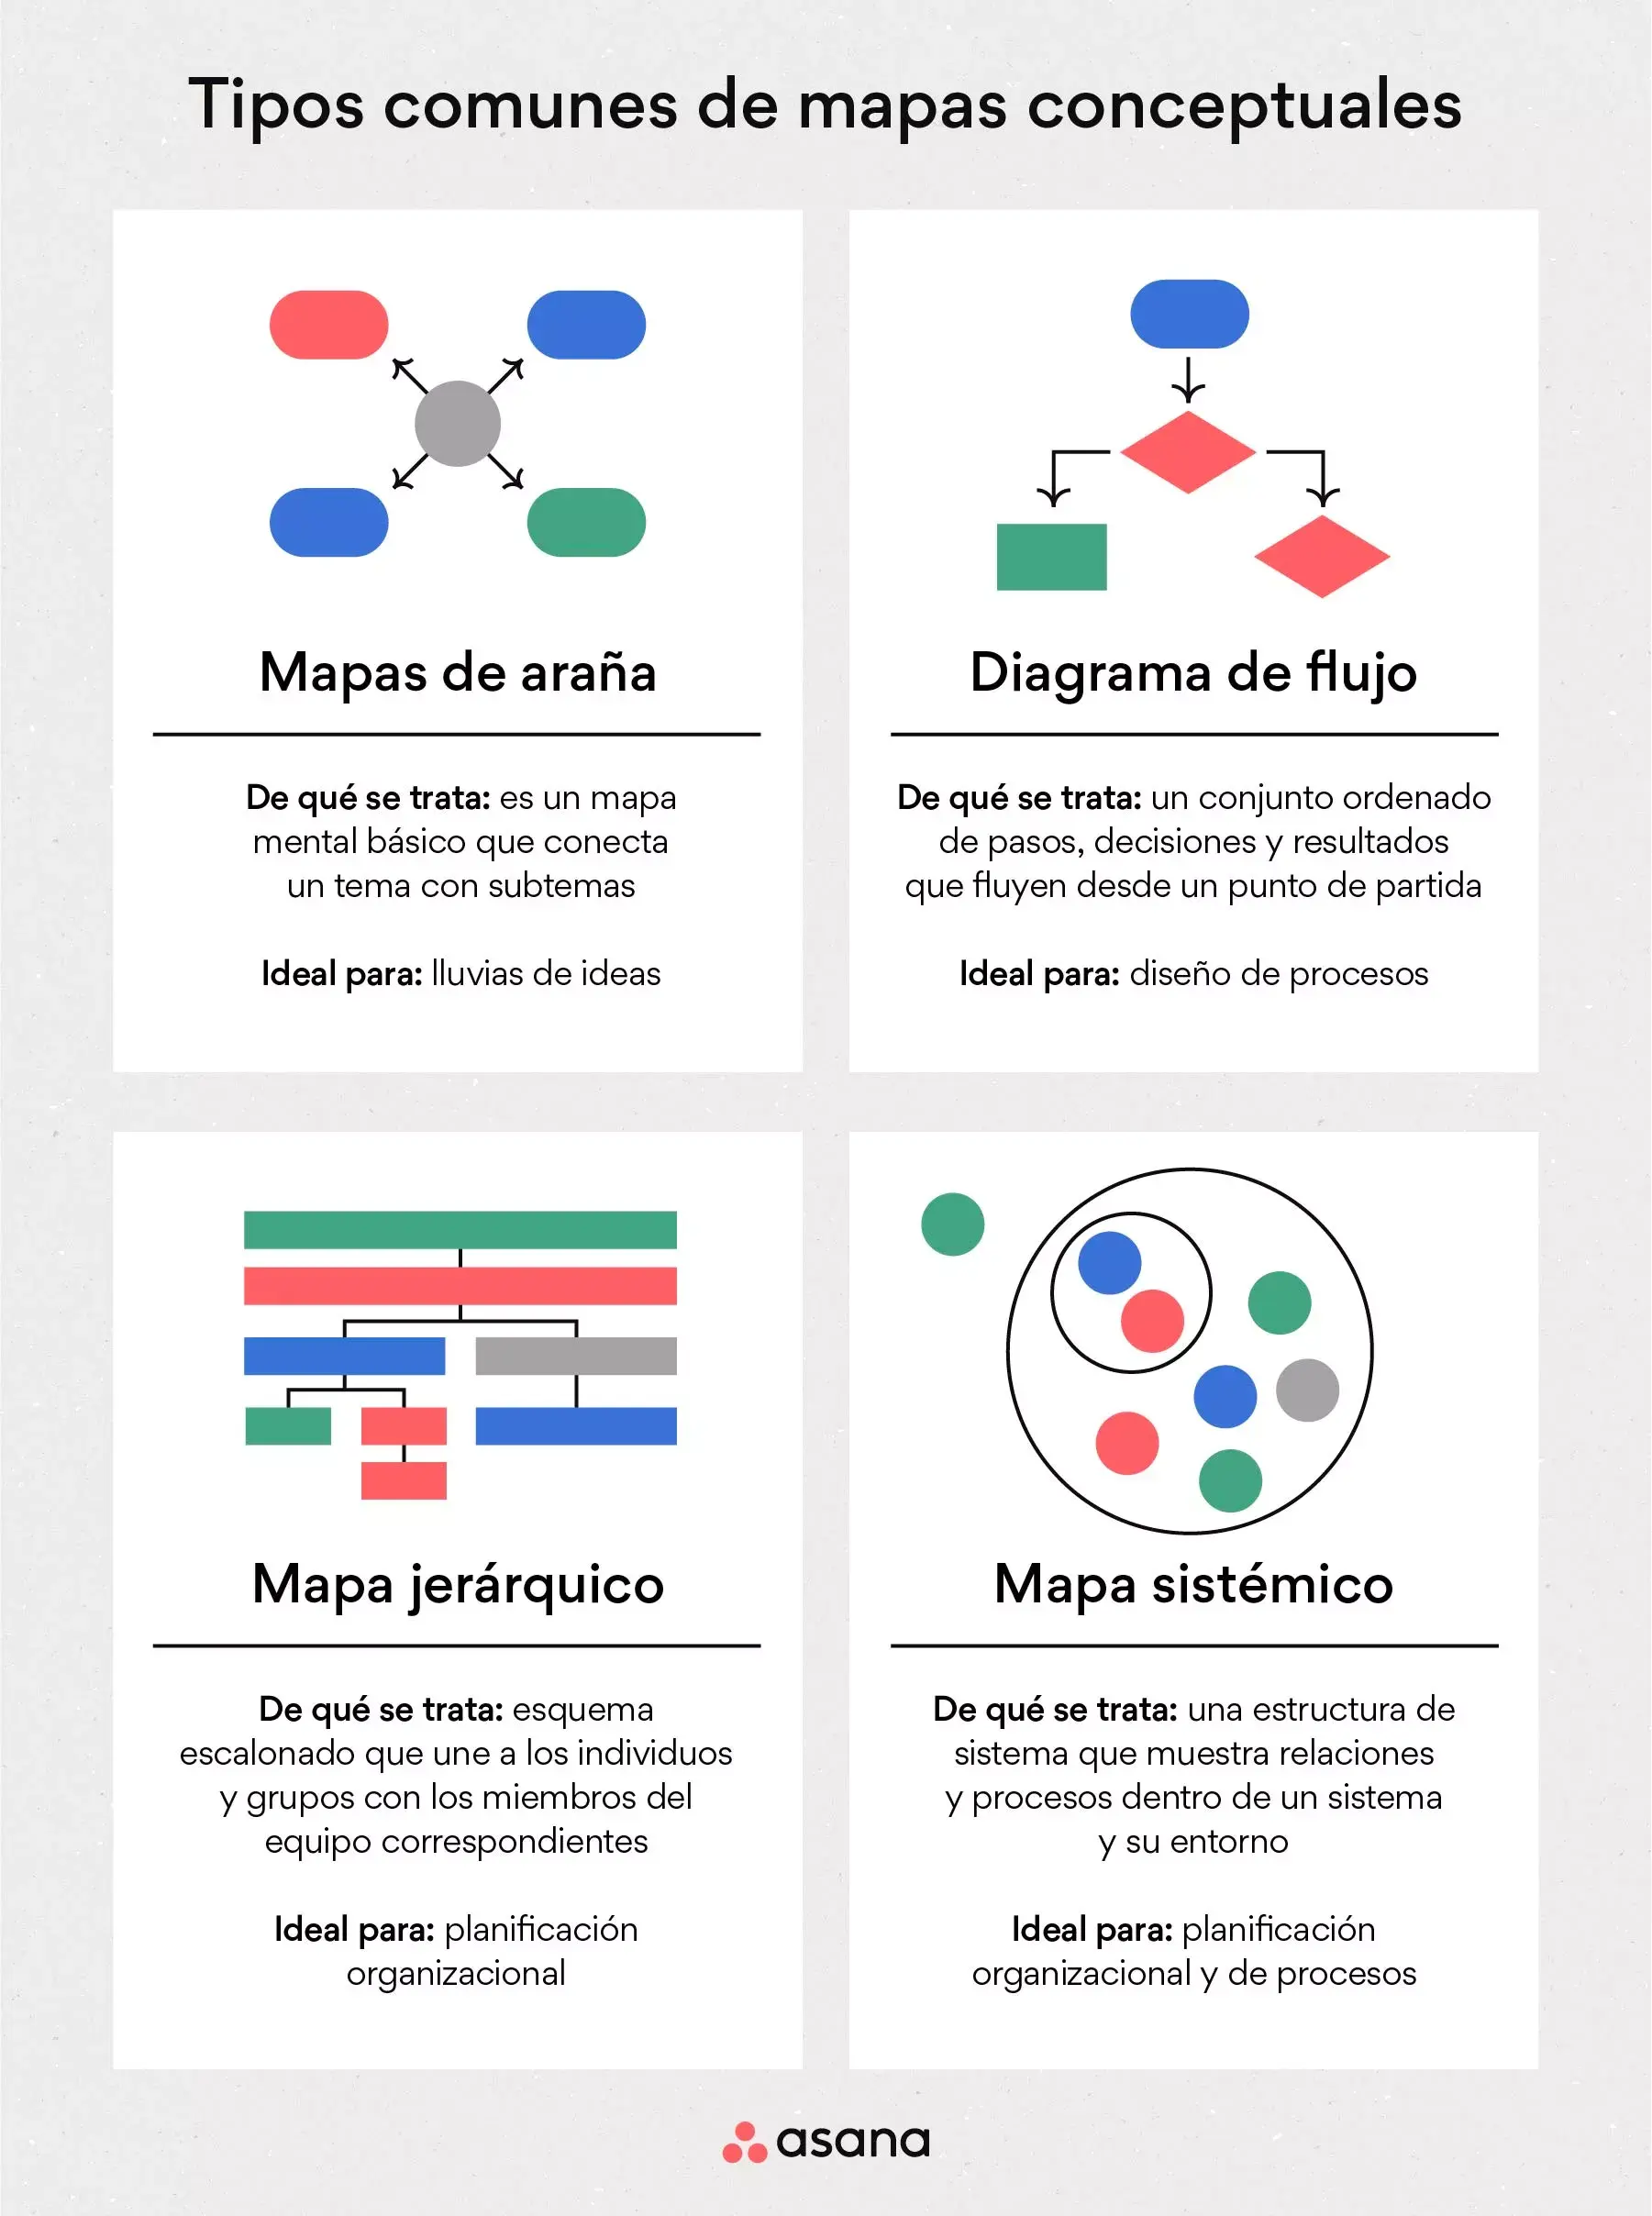 [Ilustración integrada] Tipos comunes de mapas conceptuales (infografía)